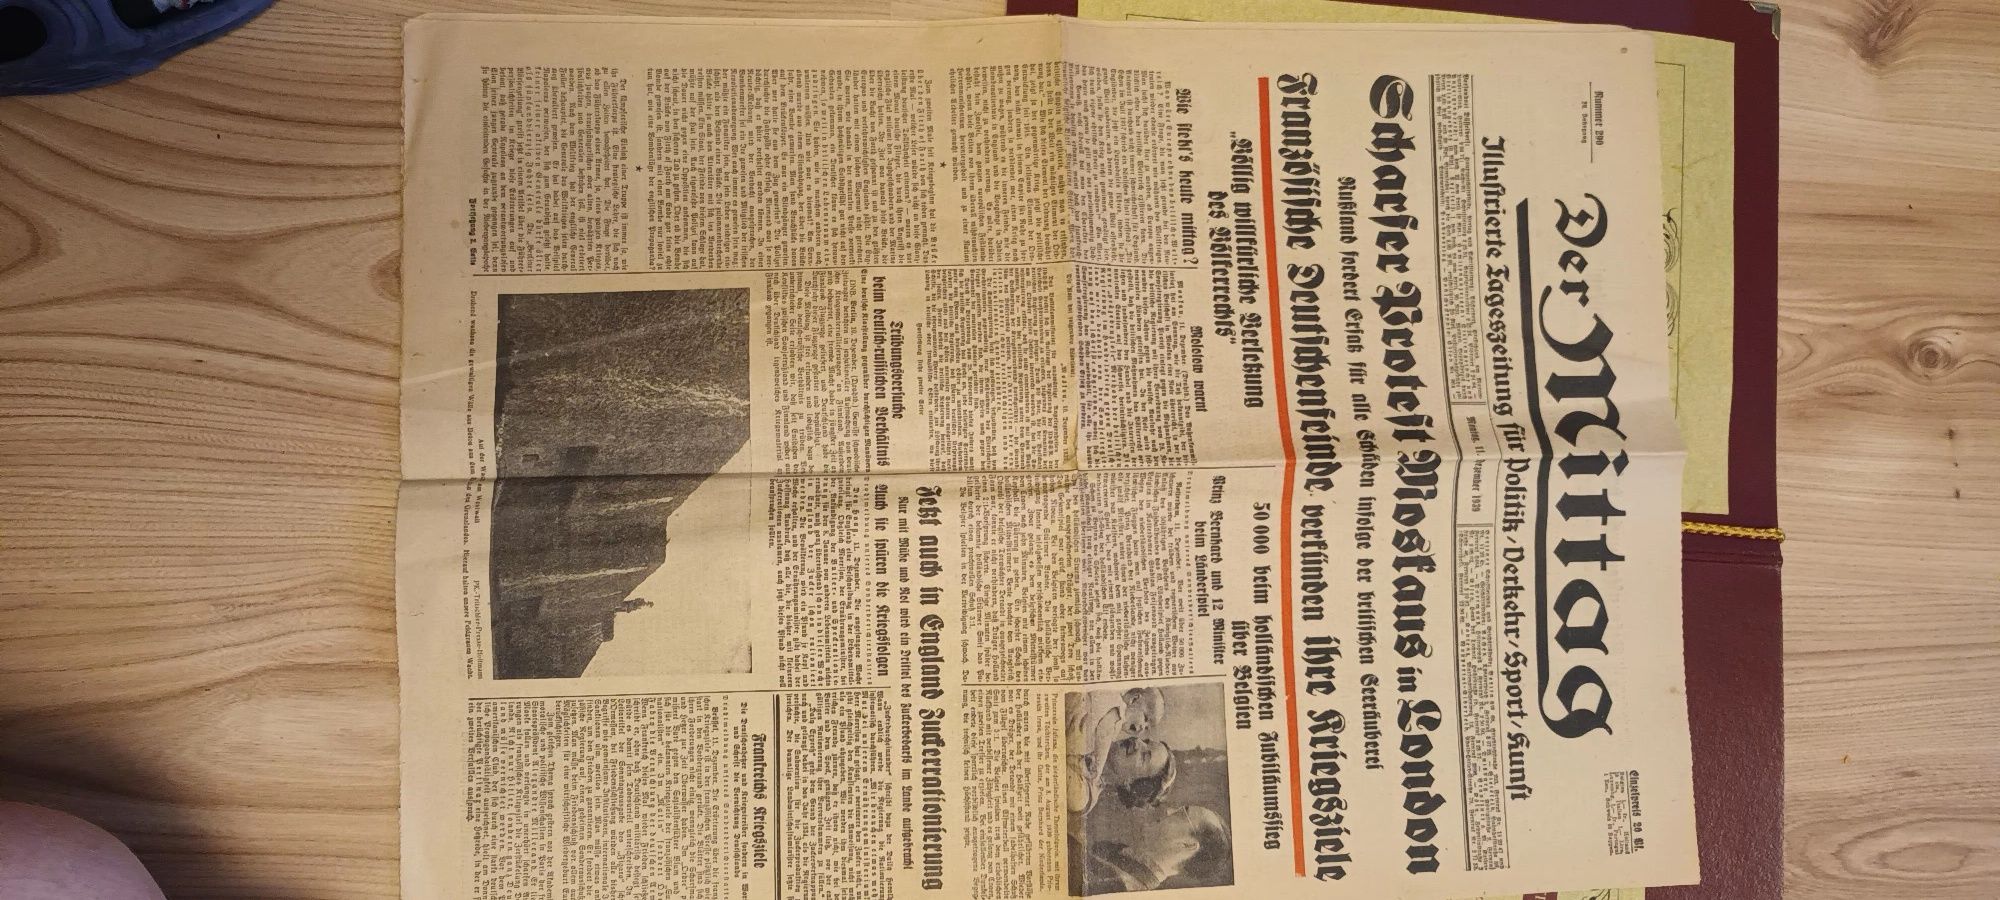 Gazeta der Mittag z 1939 roku z certyfikatem oryginalności